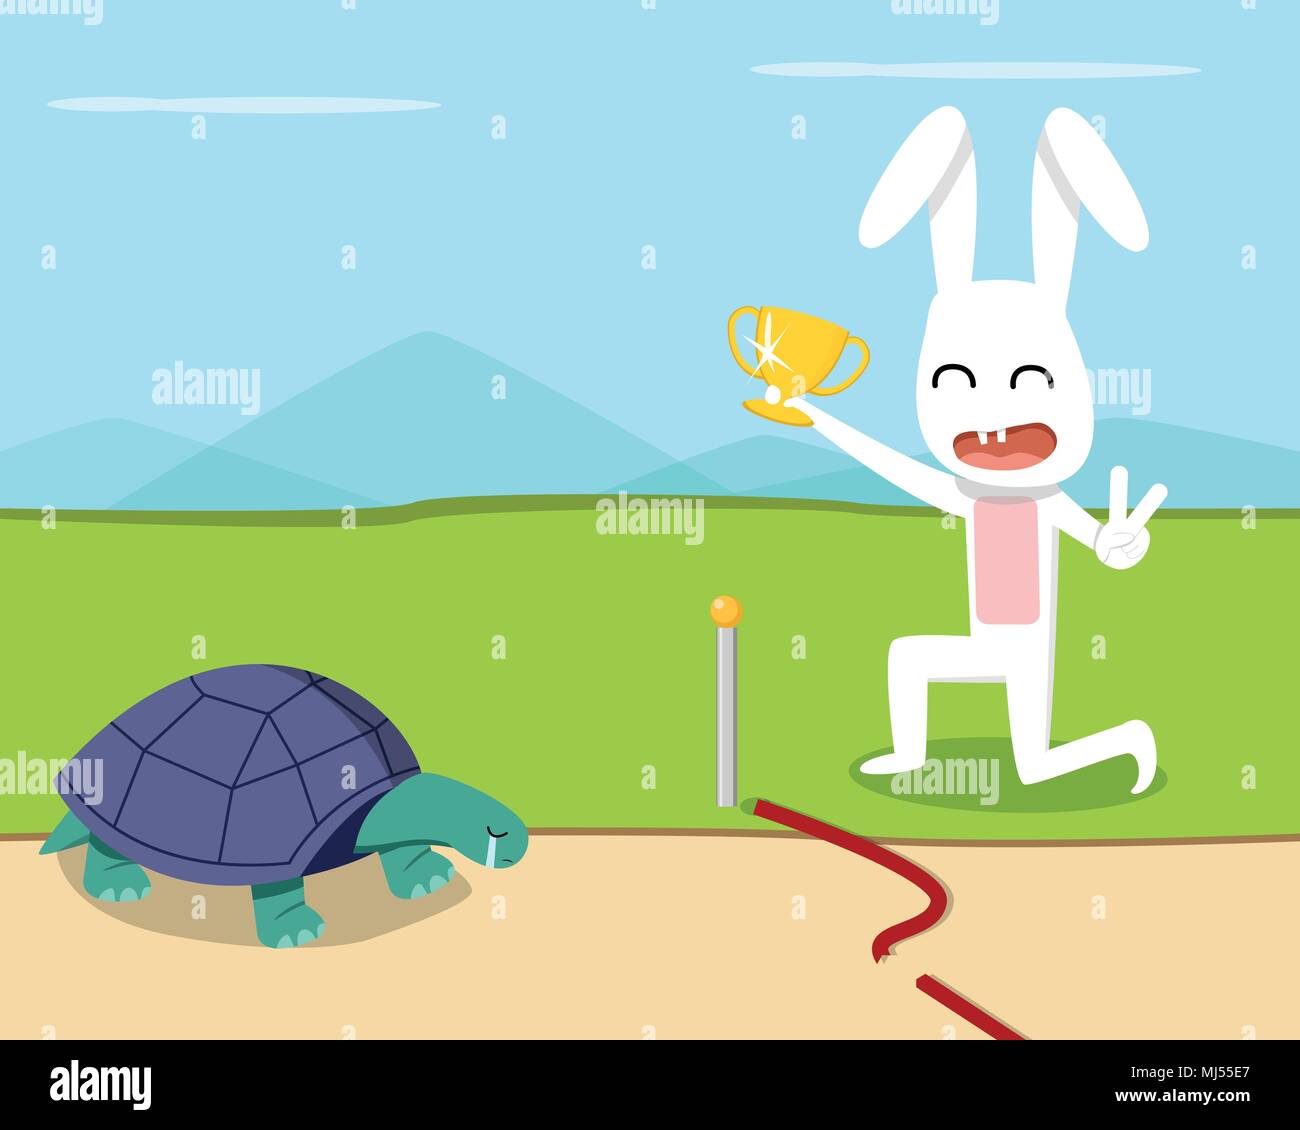 Pacific drive зайка. В гонке побеждает черепаха. Кролик vs черепаха инфографика. Кролик победил. Черепашка должна выиграть гонку.